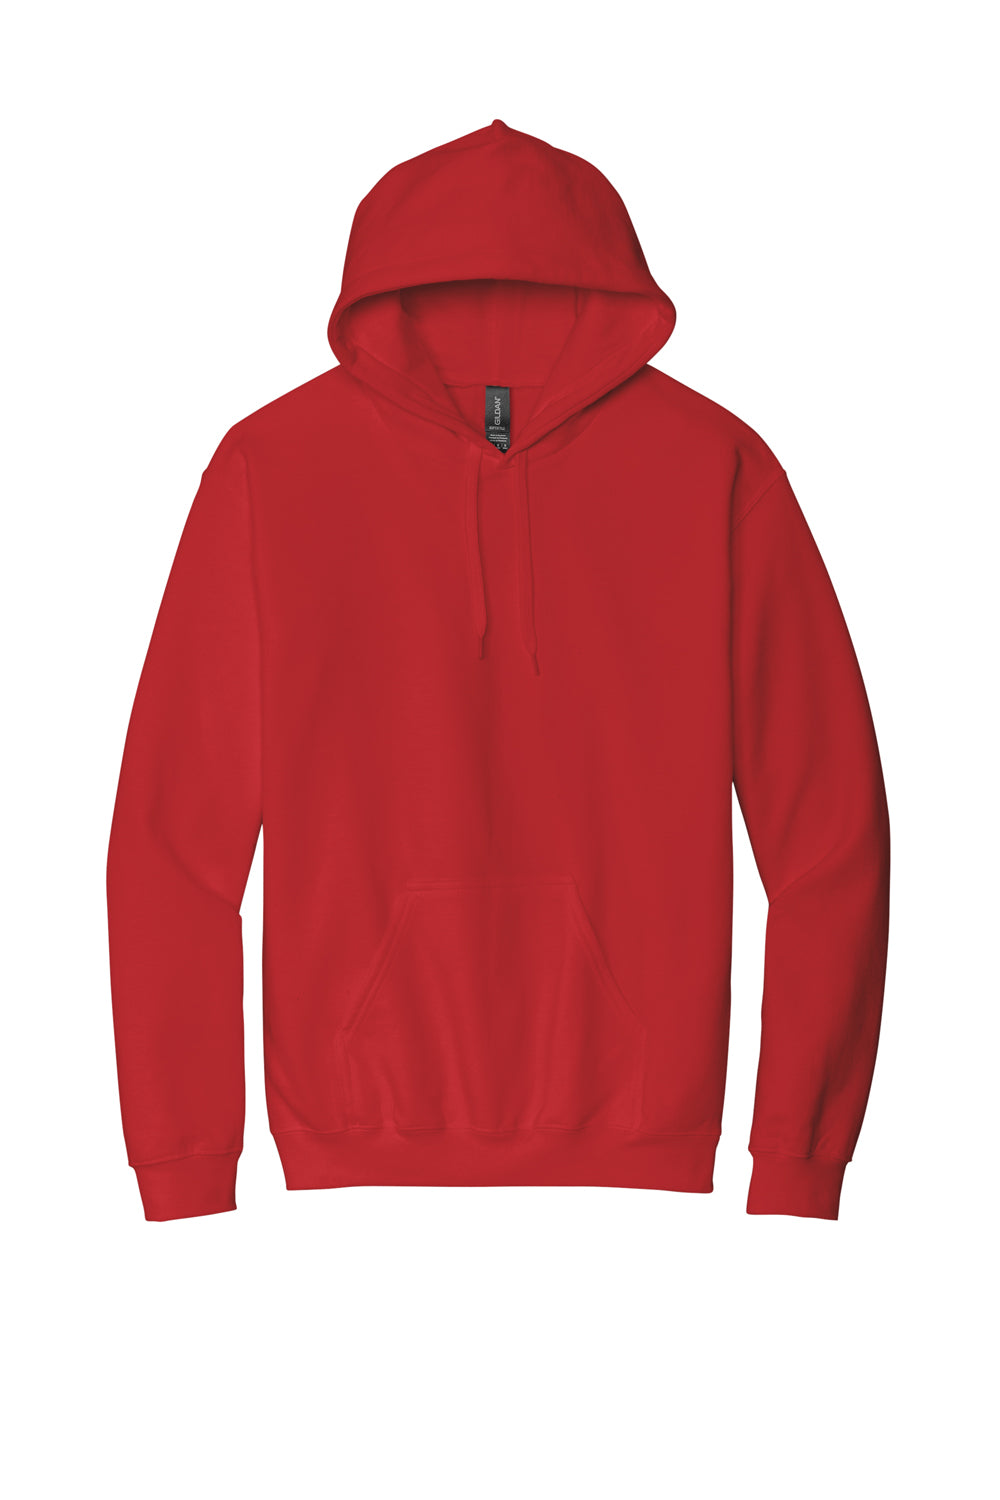 Gildan SF500 Softstyle Hooded Sweatshirt Hoodie Red Flat Front